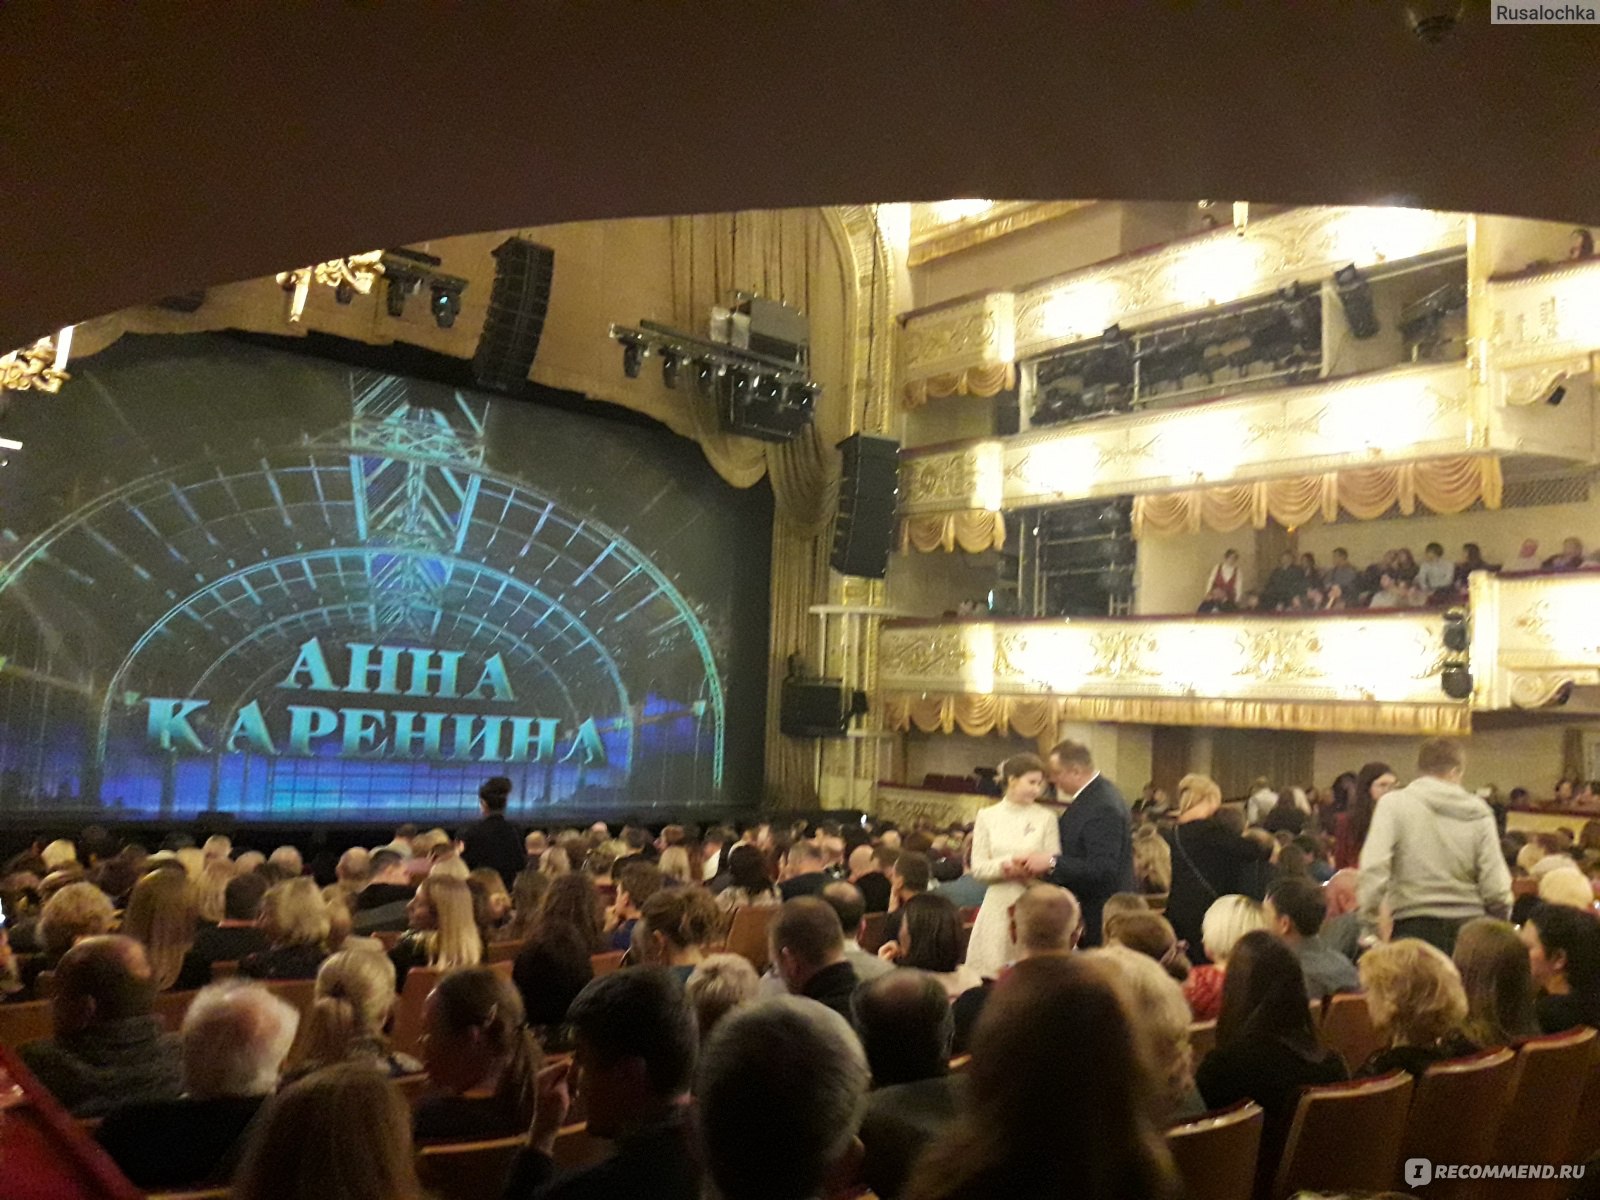 Театр оперетты расположение зала